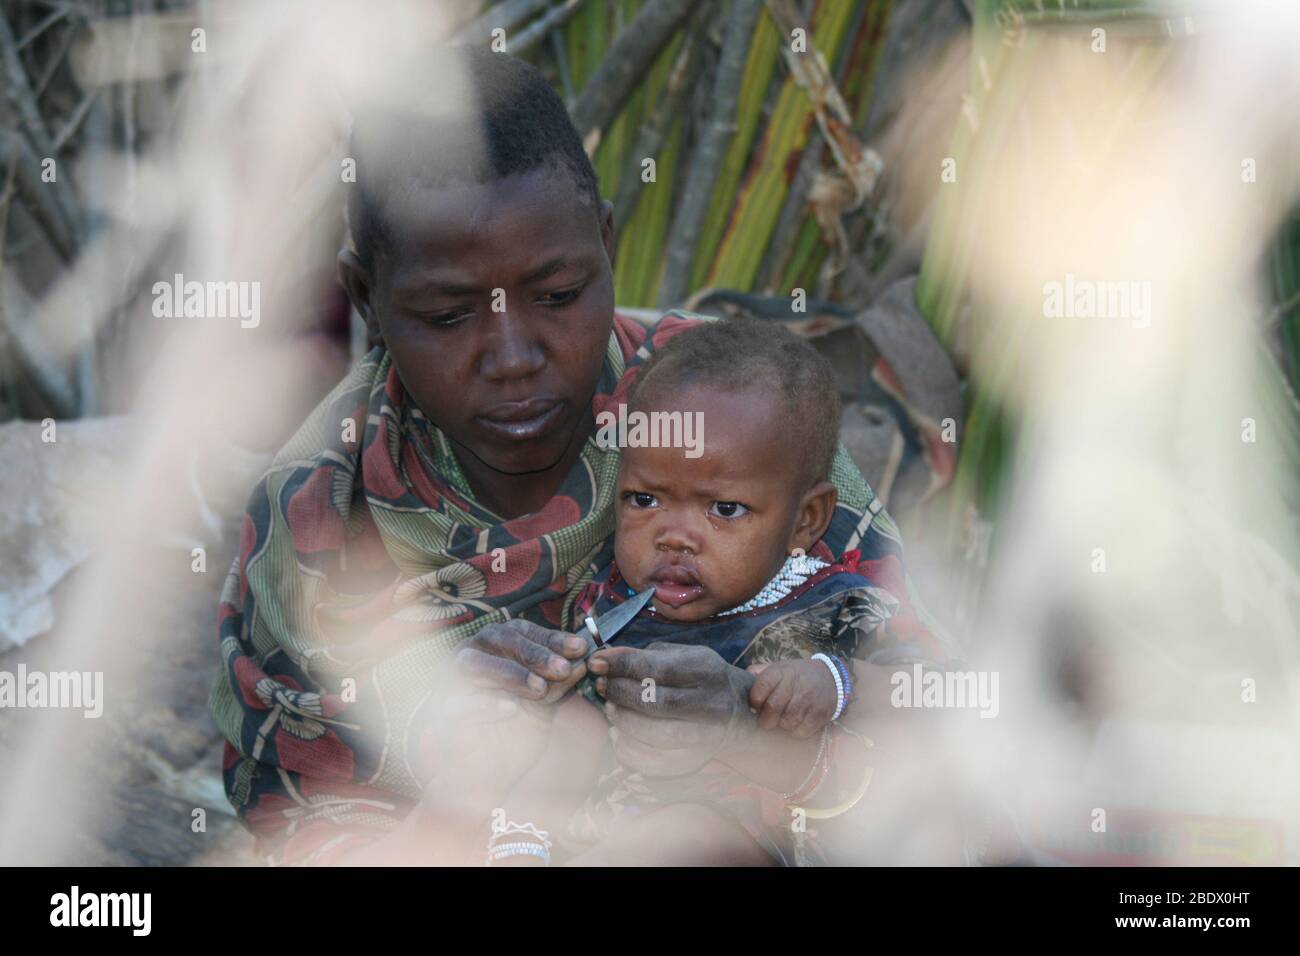 Retrato de una joven madre de Hadza con su bebé, Hadza o Hadzabe es una pequeña tribu de cazadores recolectores. Fotografiado en el Lago Eyasi, Tanzania Foto de stock